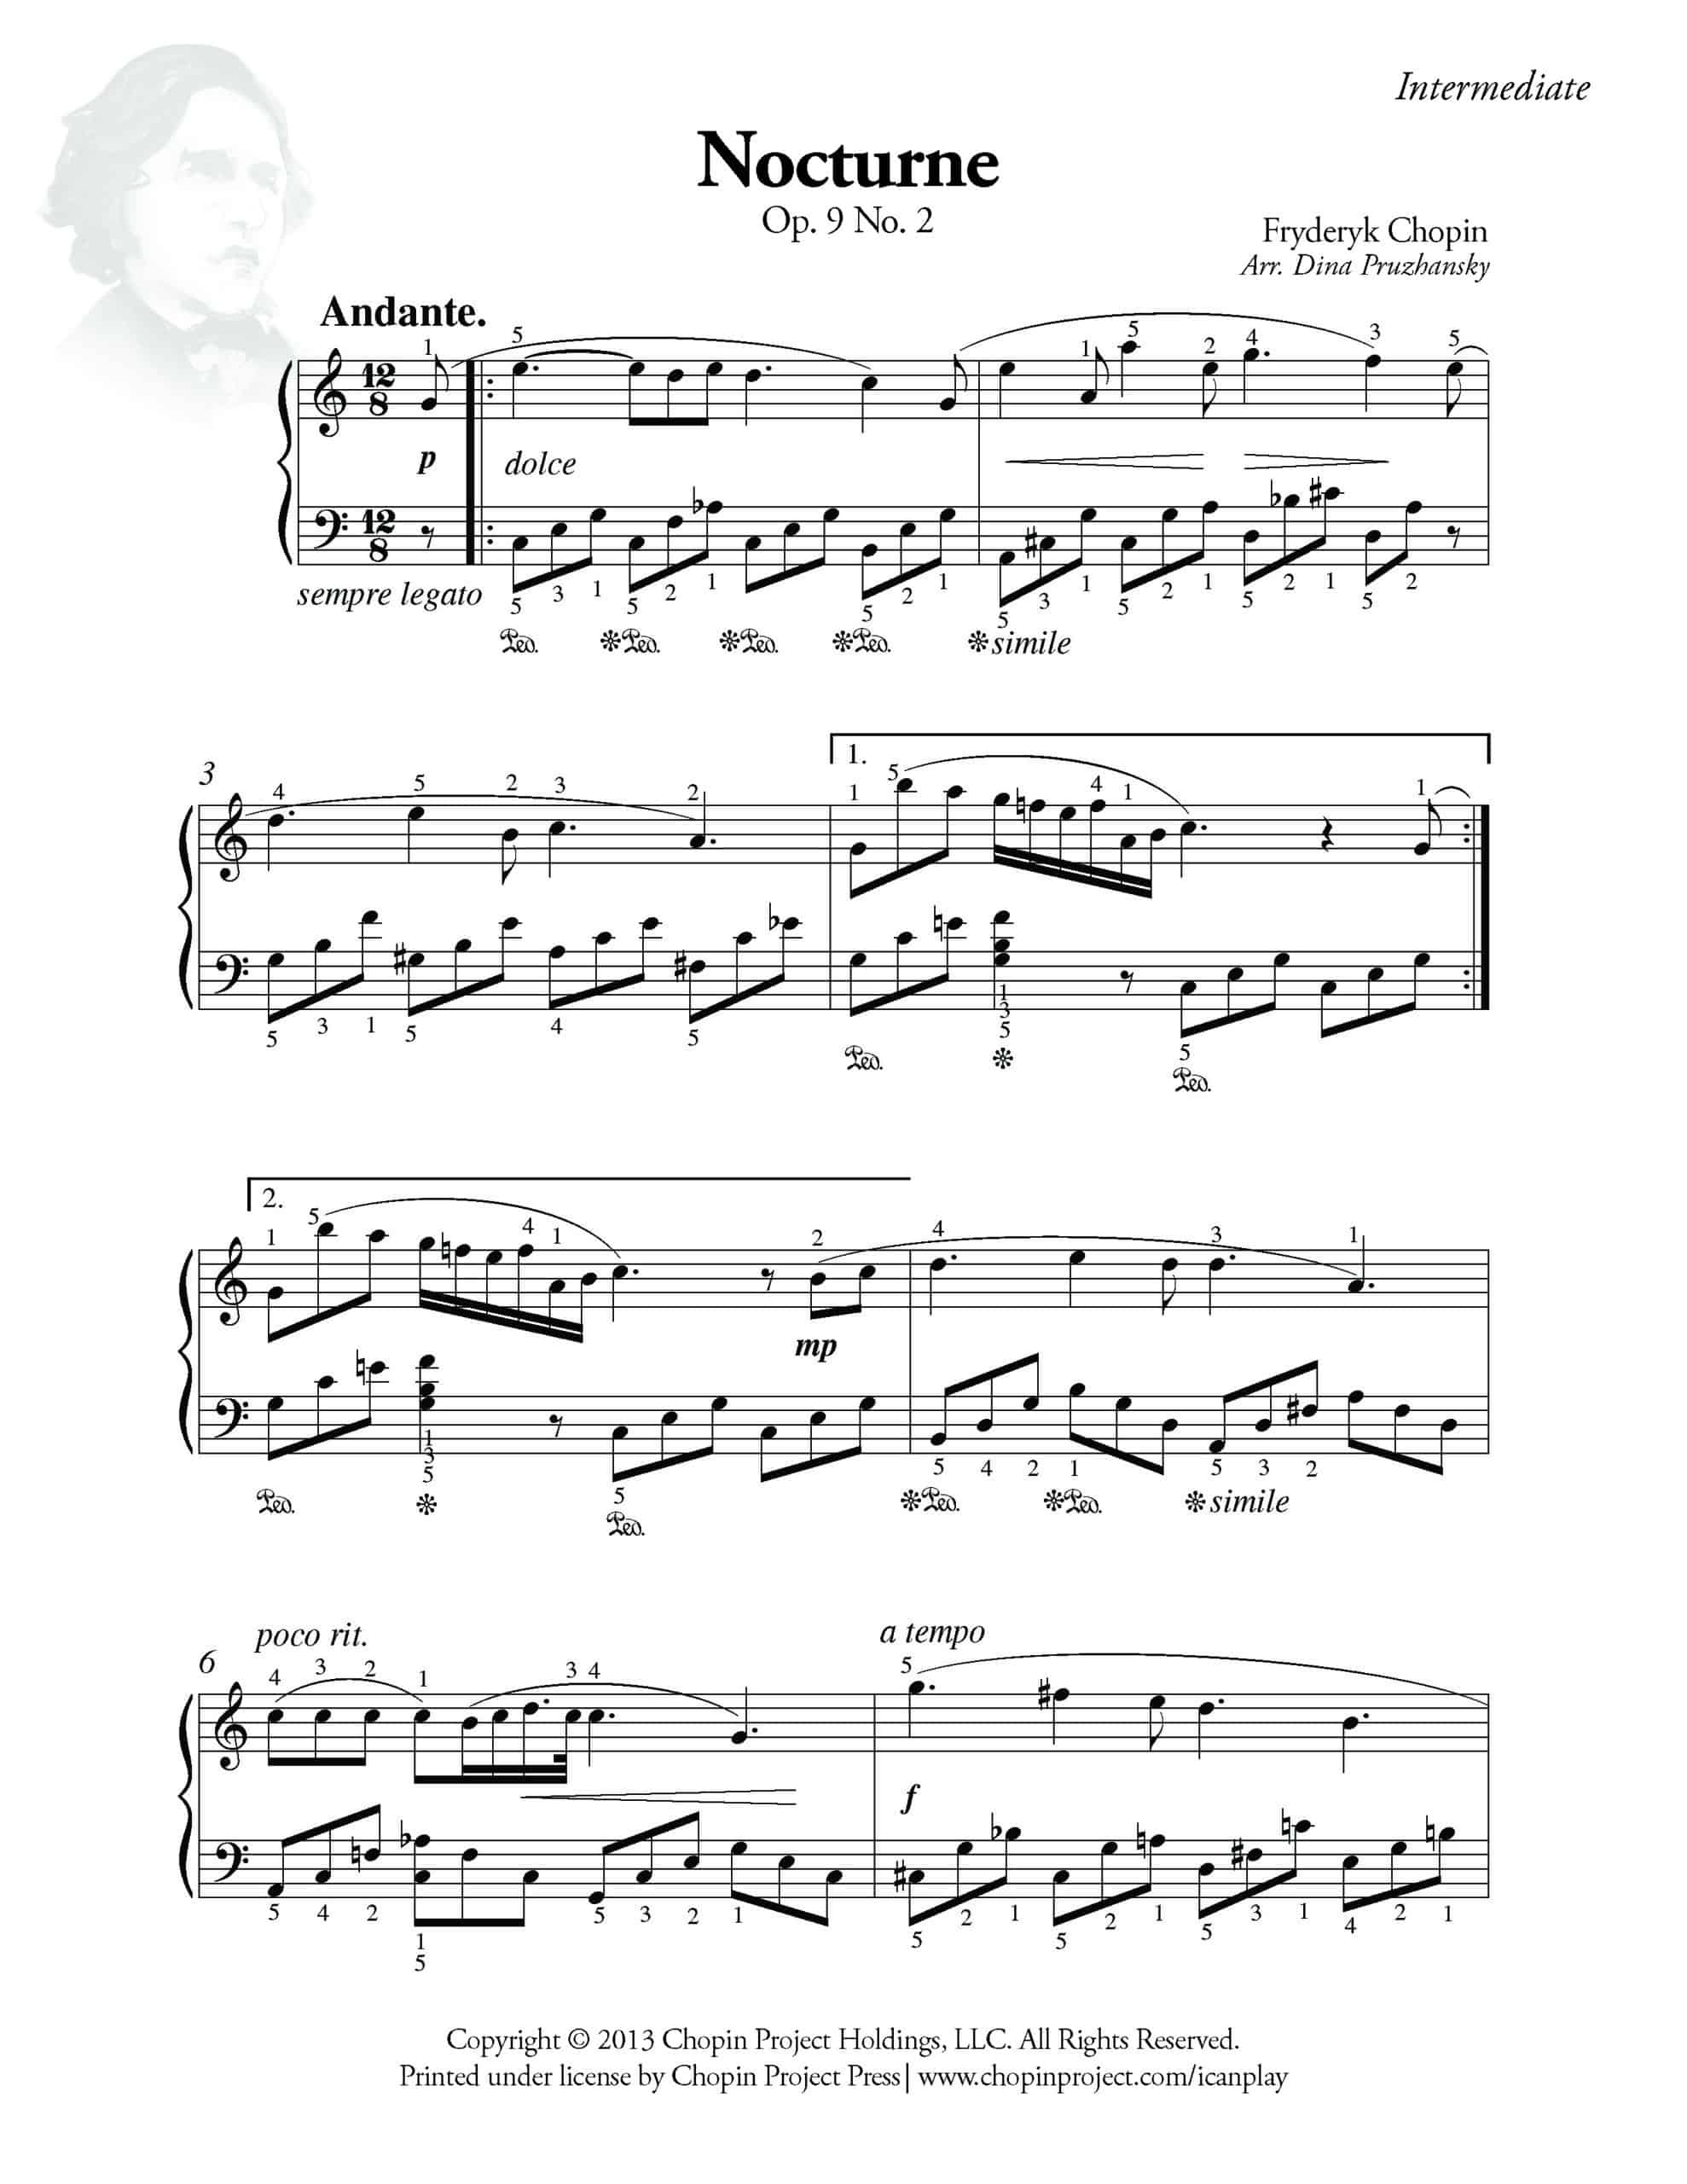 Chopin Nocturne Op. 9, No. 2 for Intermediate